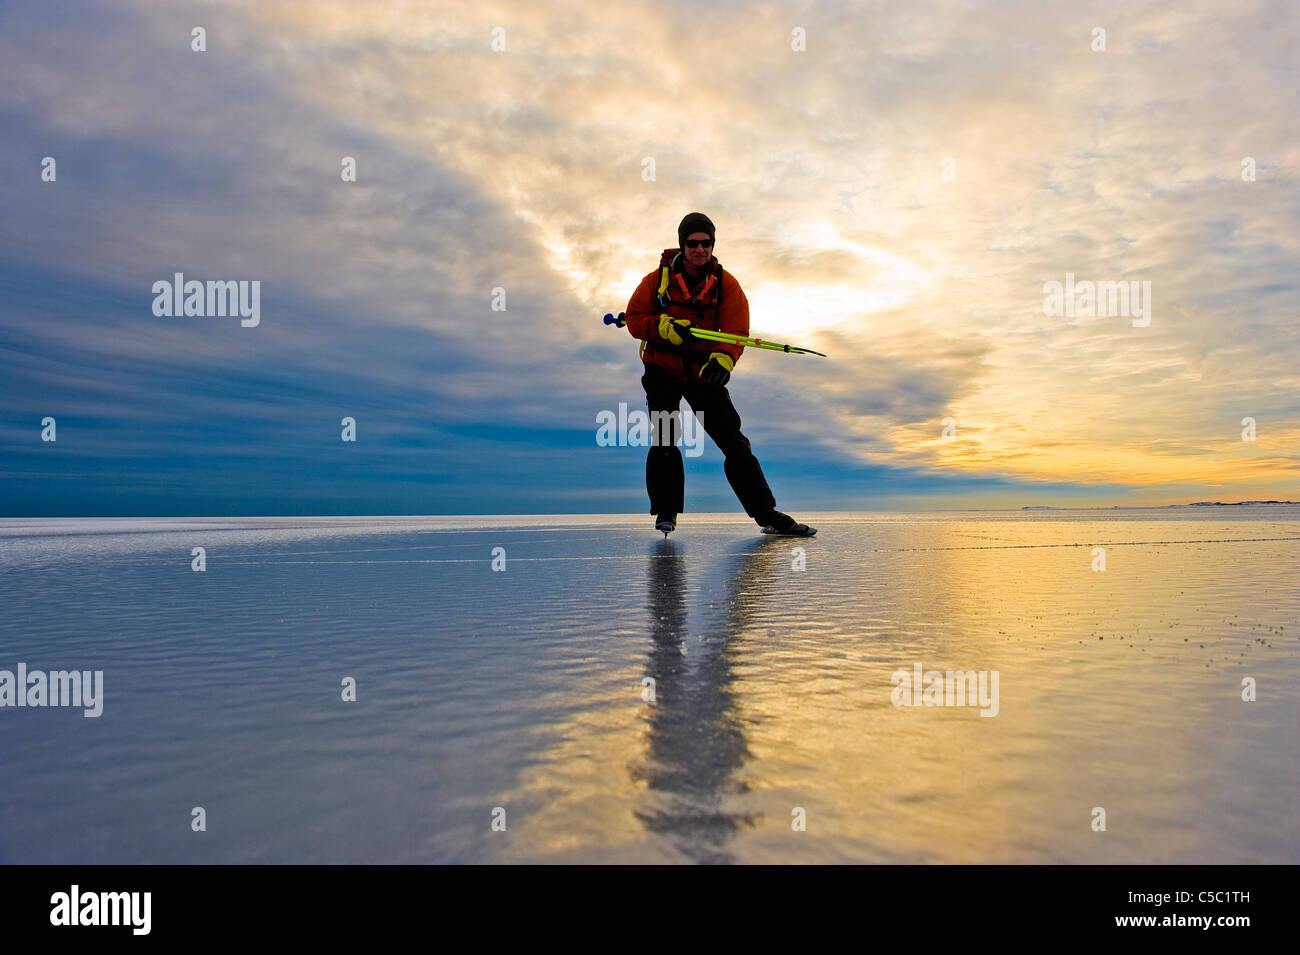 Skater on peaceful frozen lake against scenic shot of sunset Stock Photo